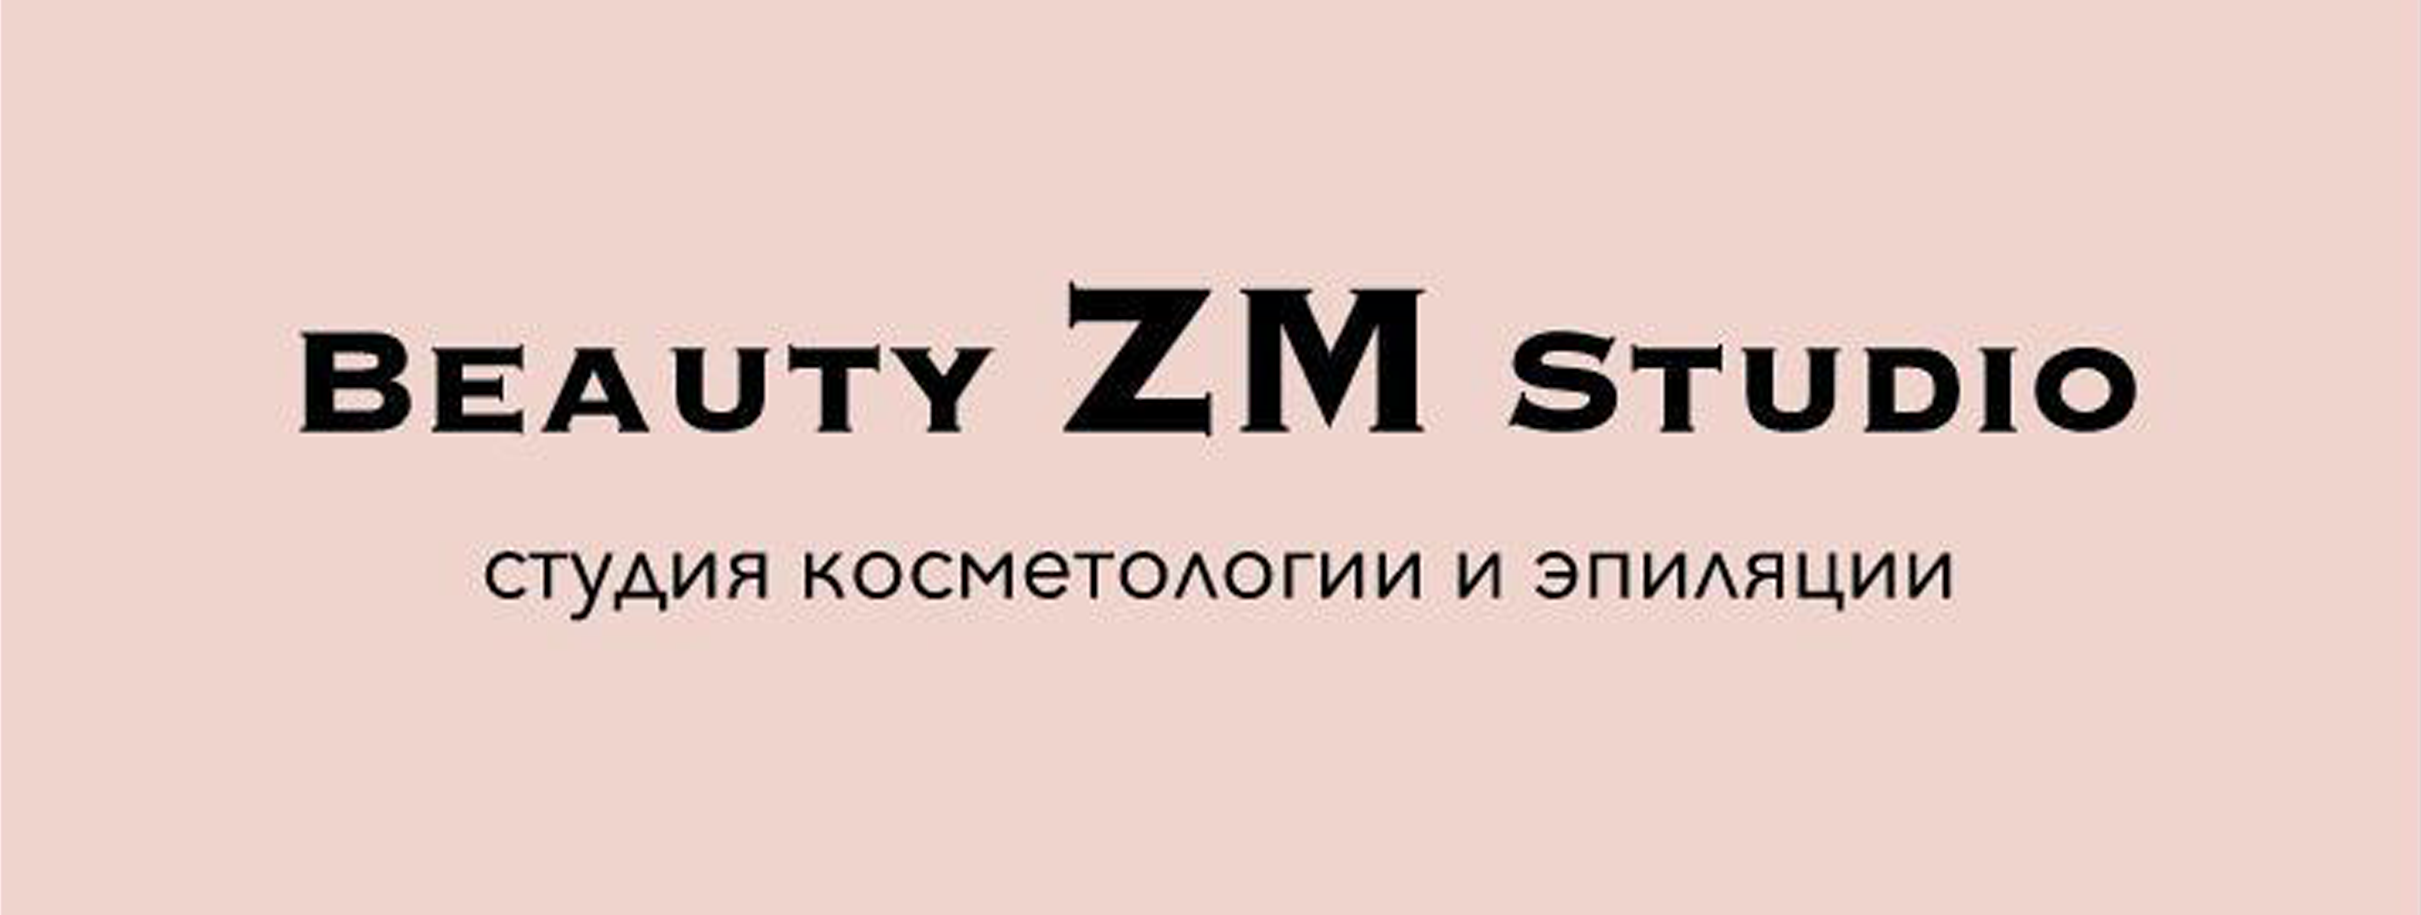 ZM_Studio